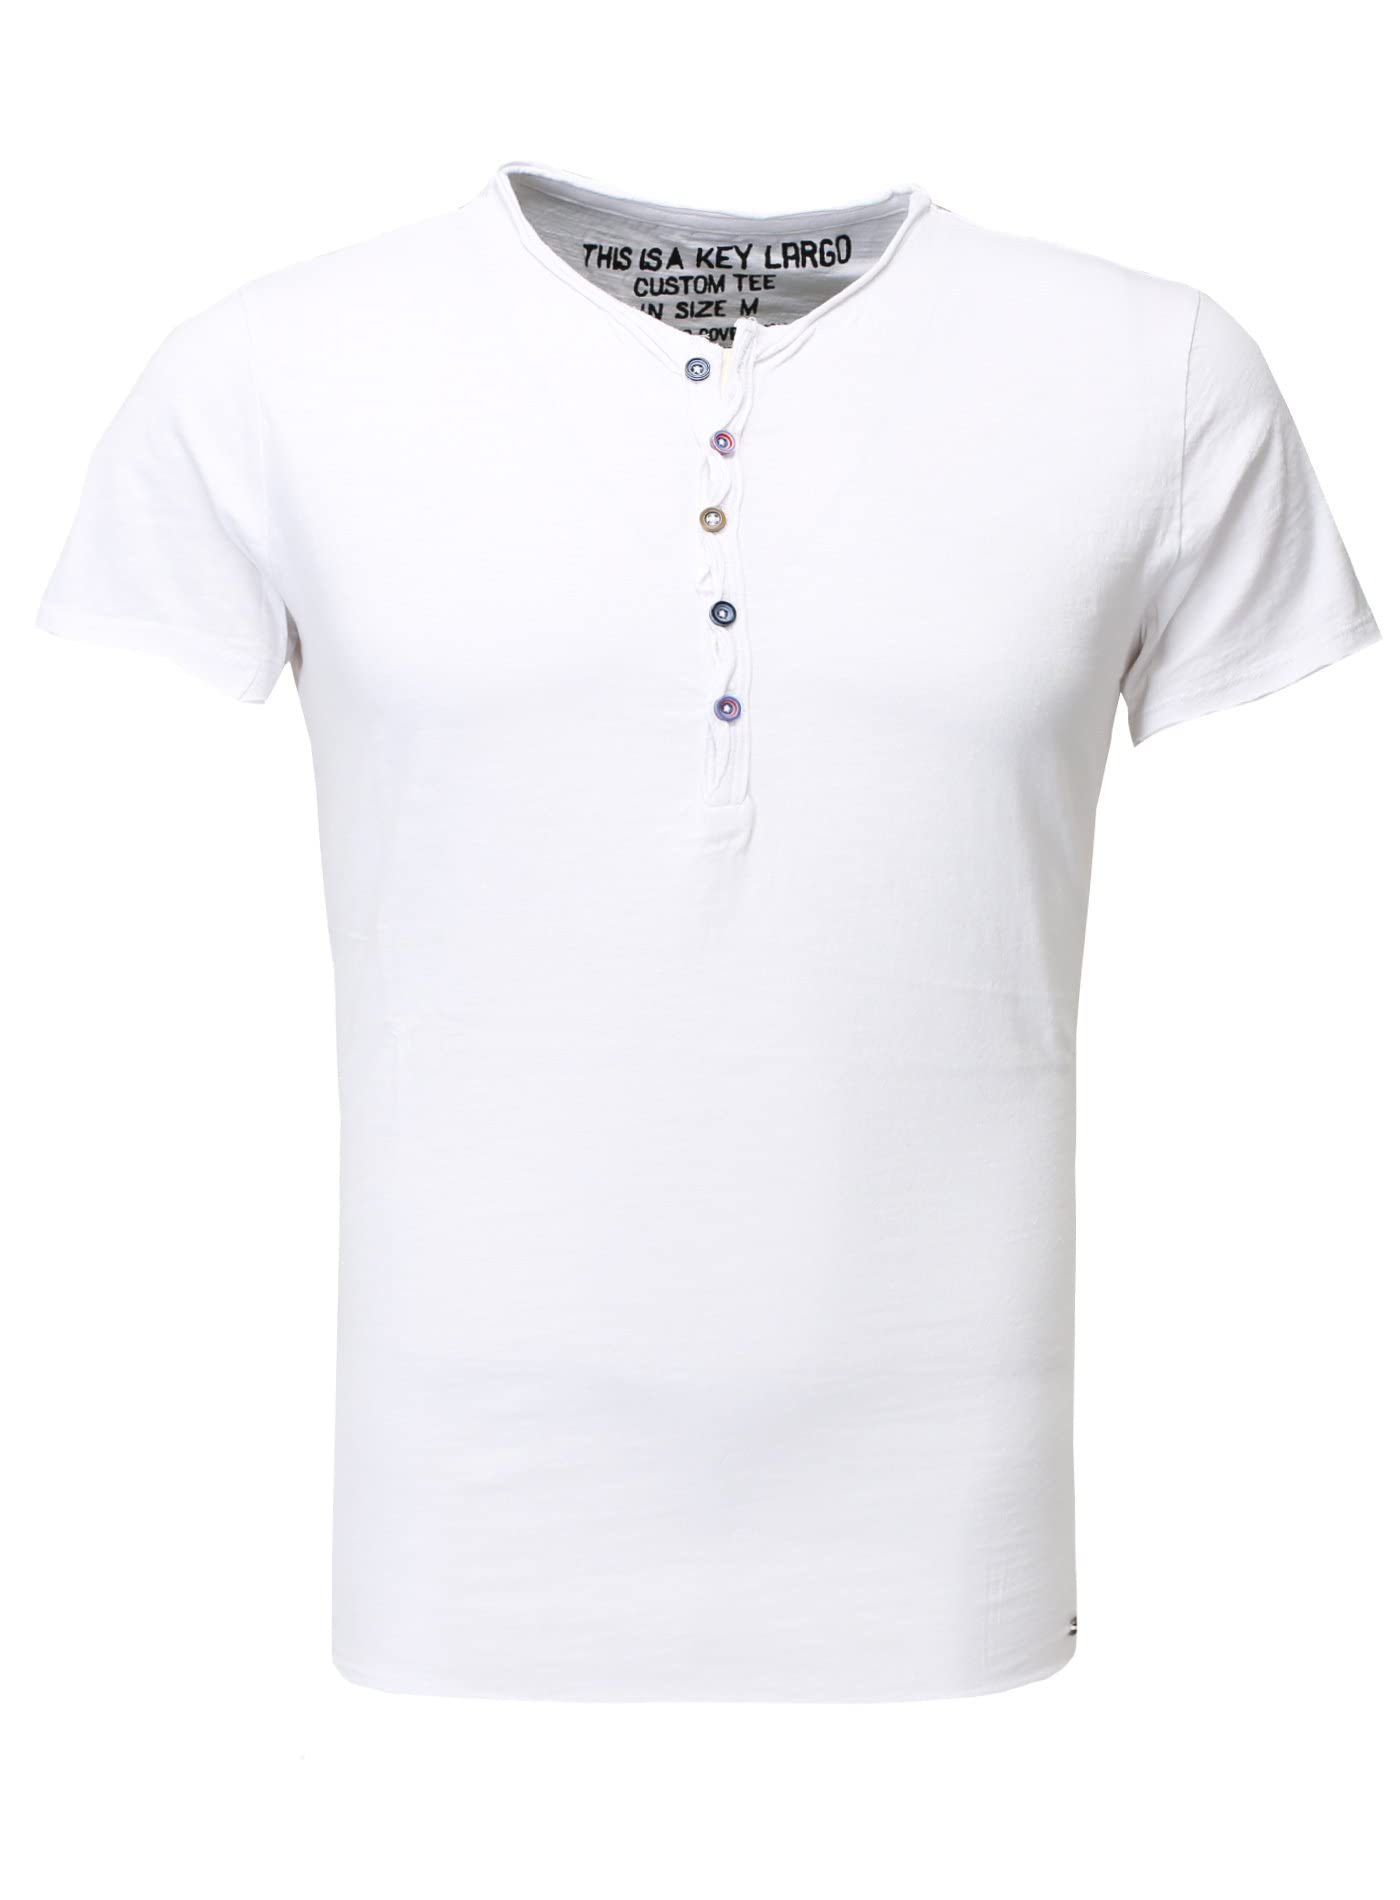 KEY LARGO Herren MT Lemonade T-Shirt, White (1000), S